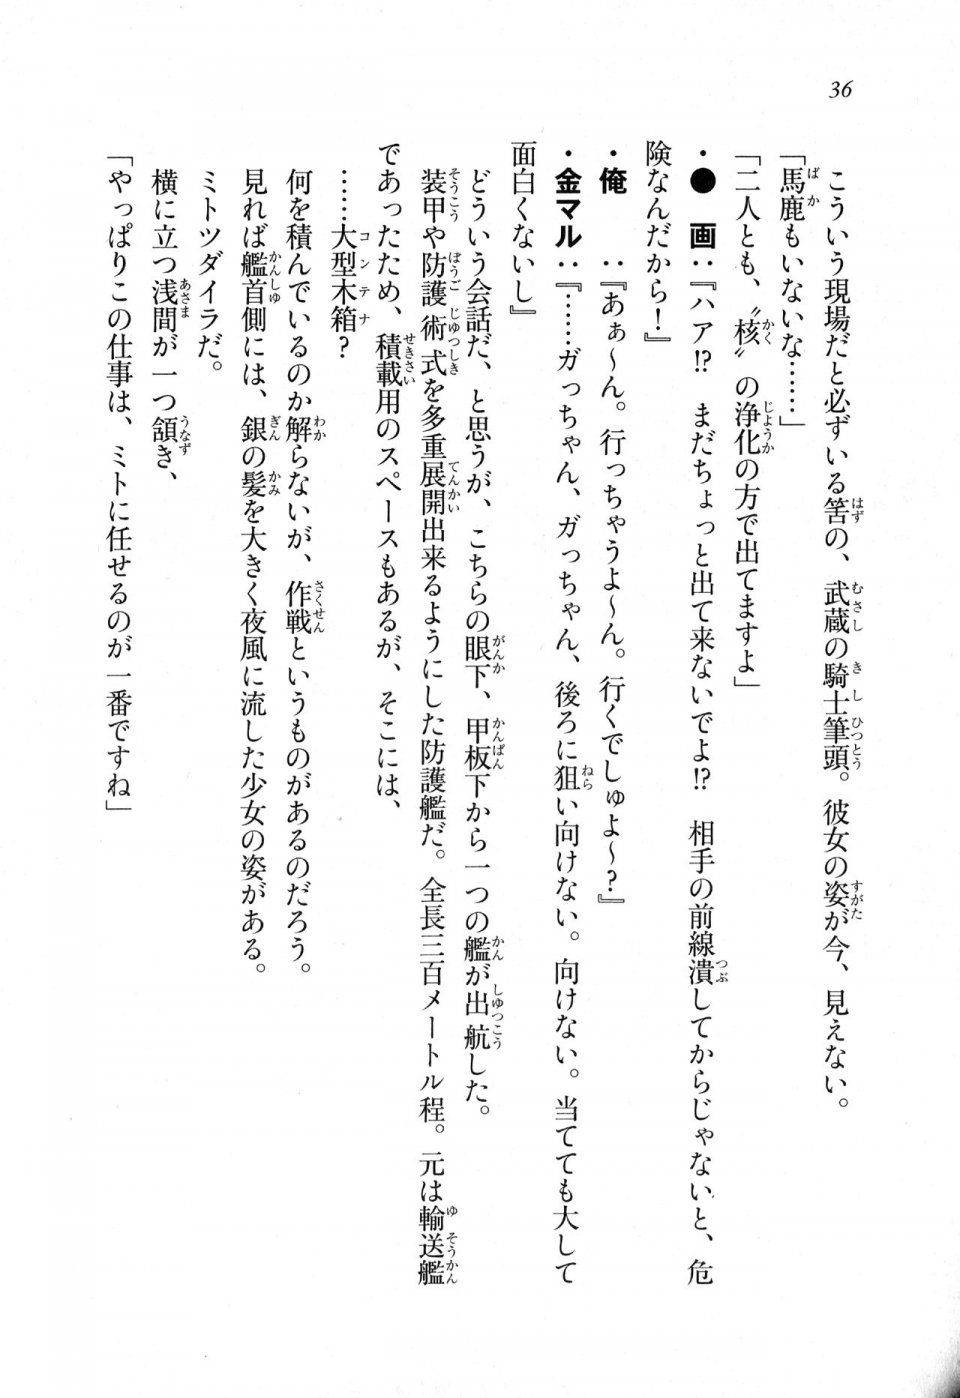 Kyoukai Senjou no Horizon LN Sidestory Vol 1 - Photo #35